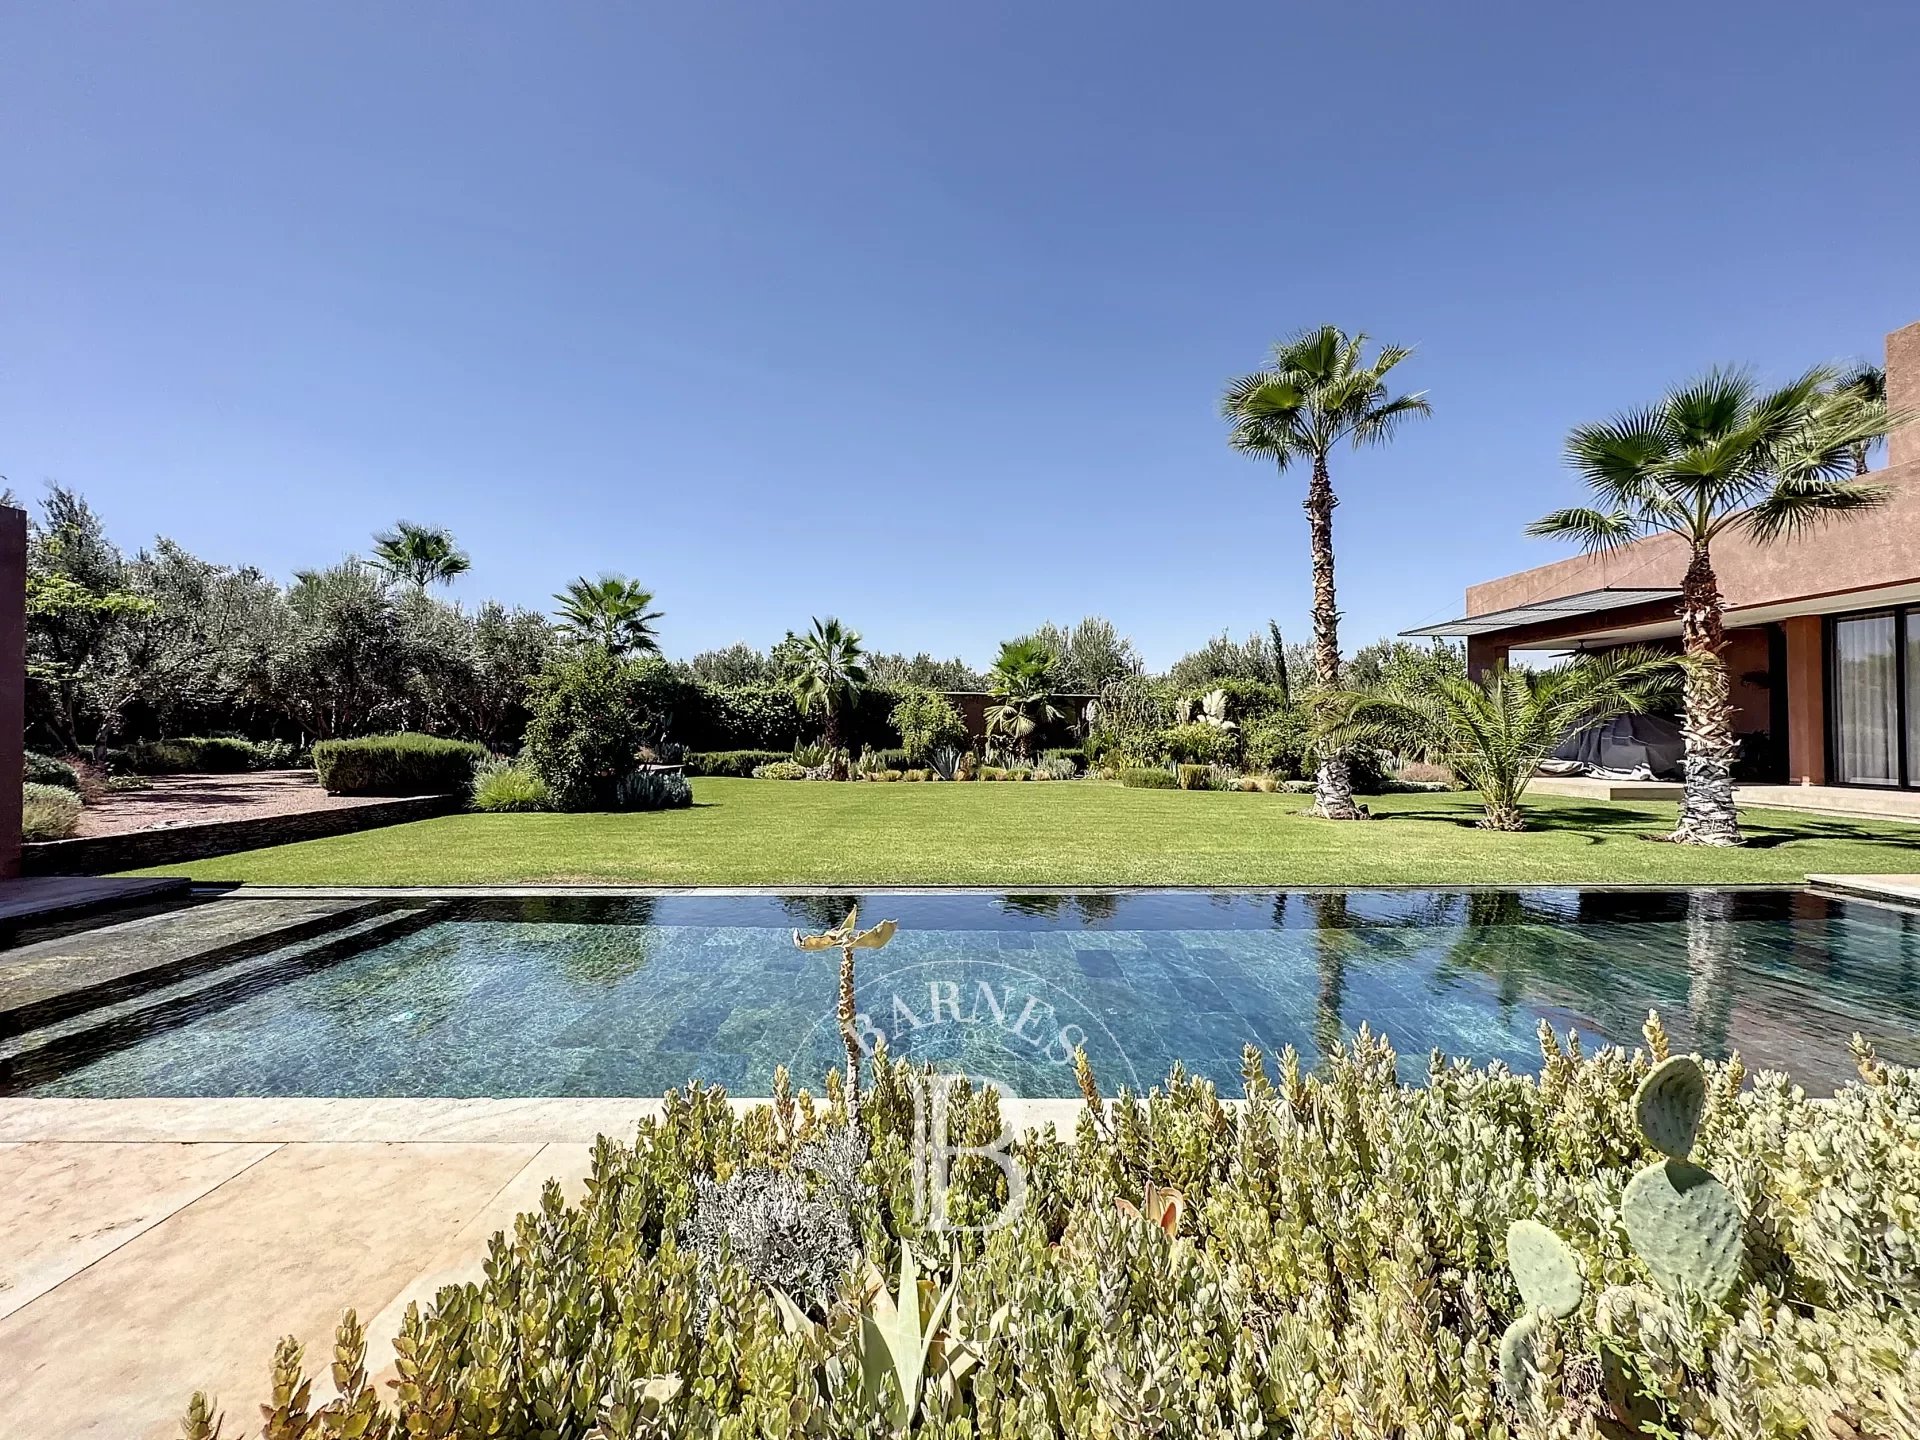 Villa contemporaine de luxe avec piscine à débordement à vendre sur la route de l'Ourika à Marrakech - Agence immobilière - picture 2 title=